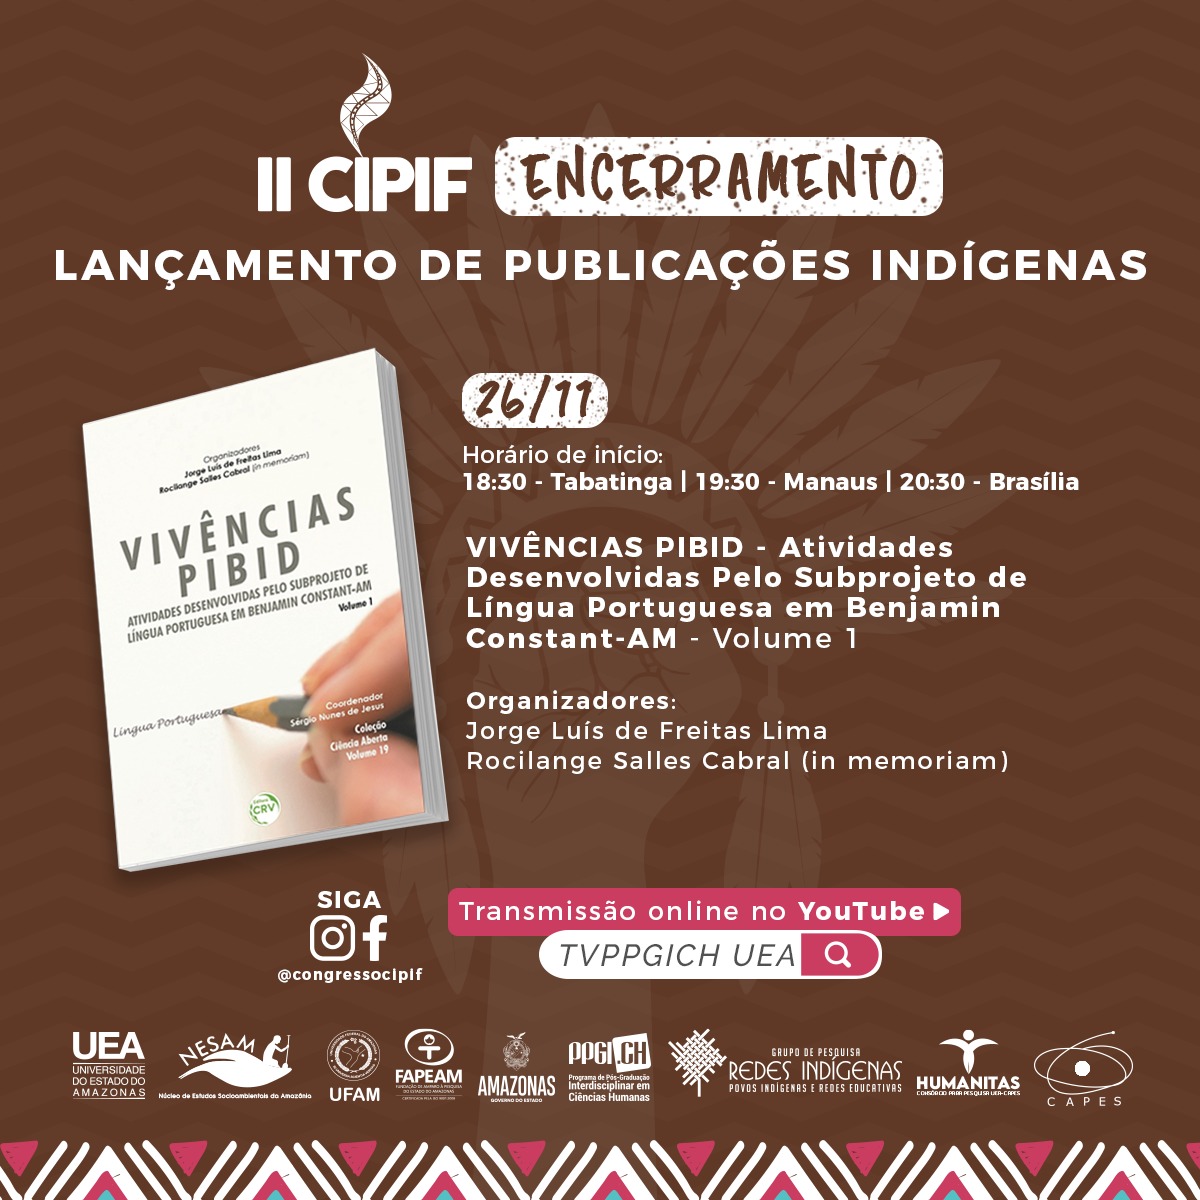 ENCERRAMENTO DO EVENTO: Lançamento de Publicações Indígenas - VIVÊNCIAS PIBID - Atividades Desenvolvidas Pelo Subprojeto de Língua Portuguesa em Benjamin Constant-AM - Volume 1.⠀